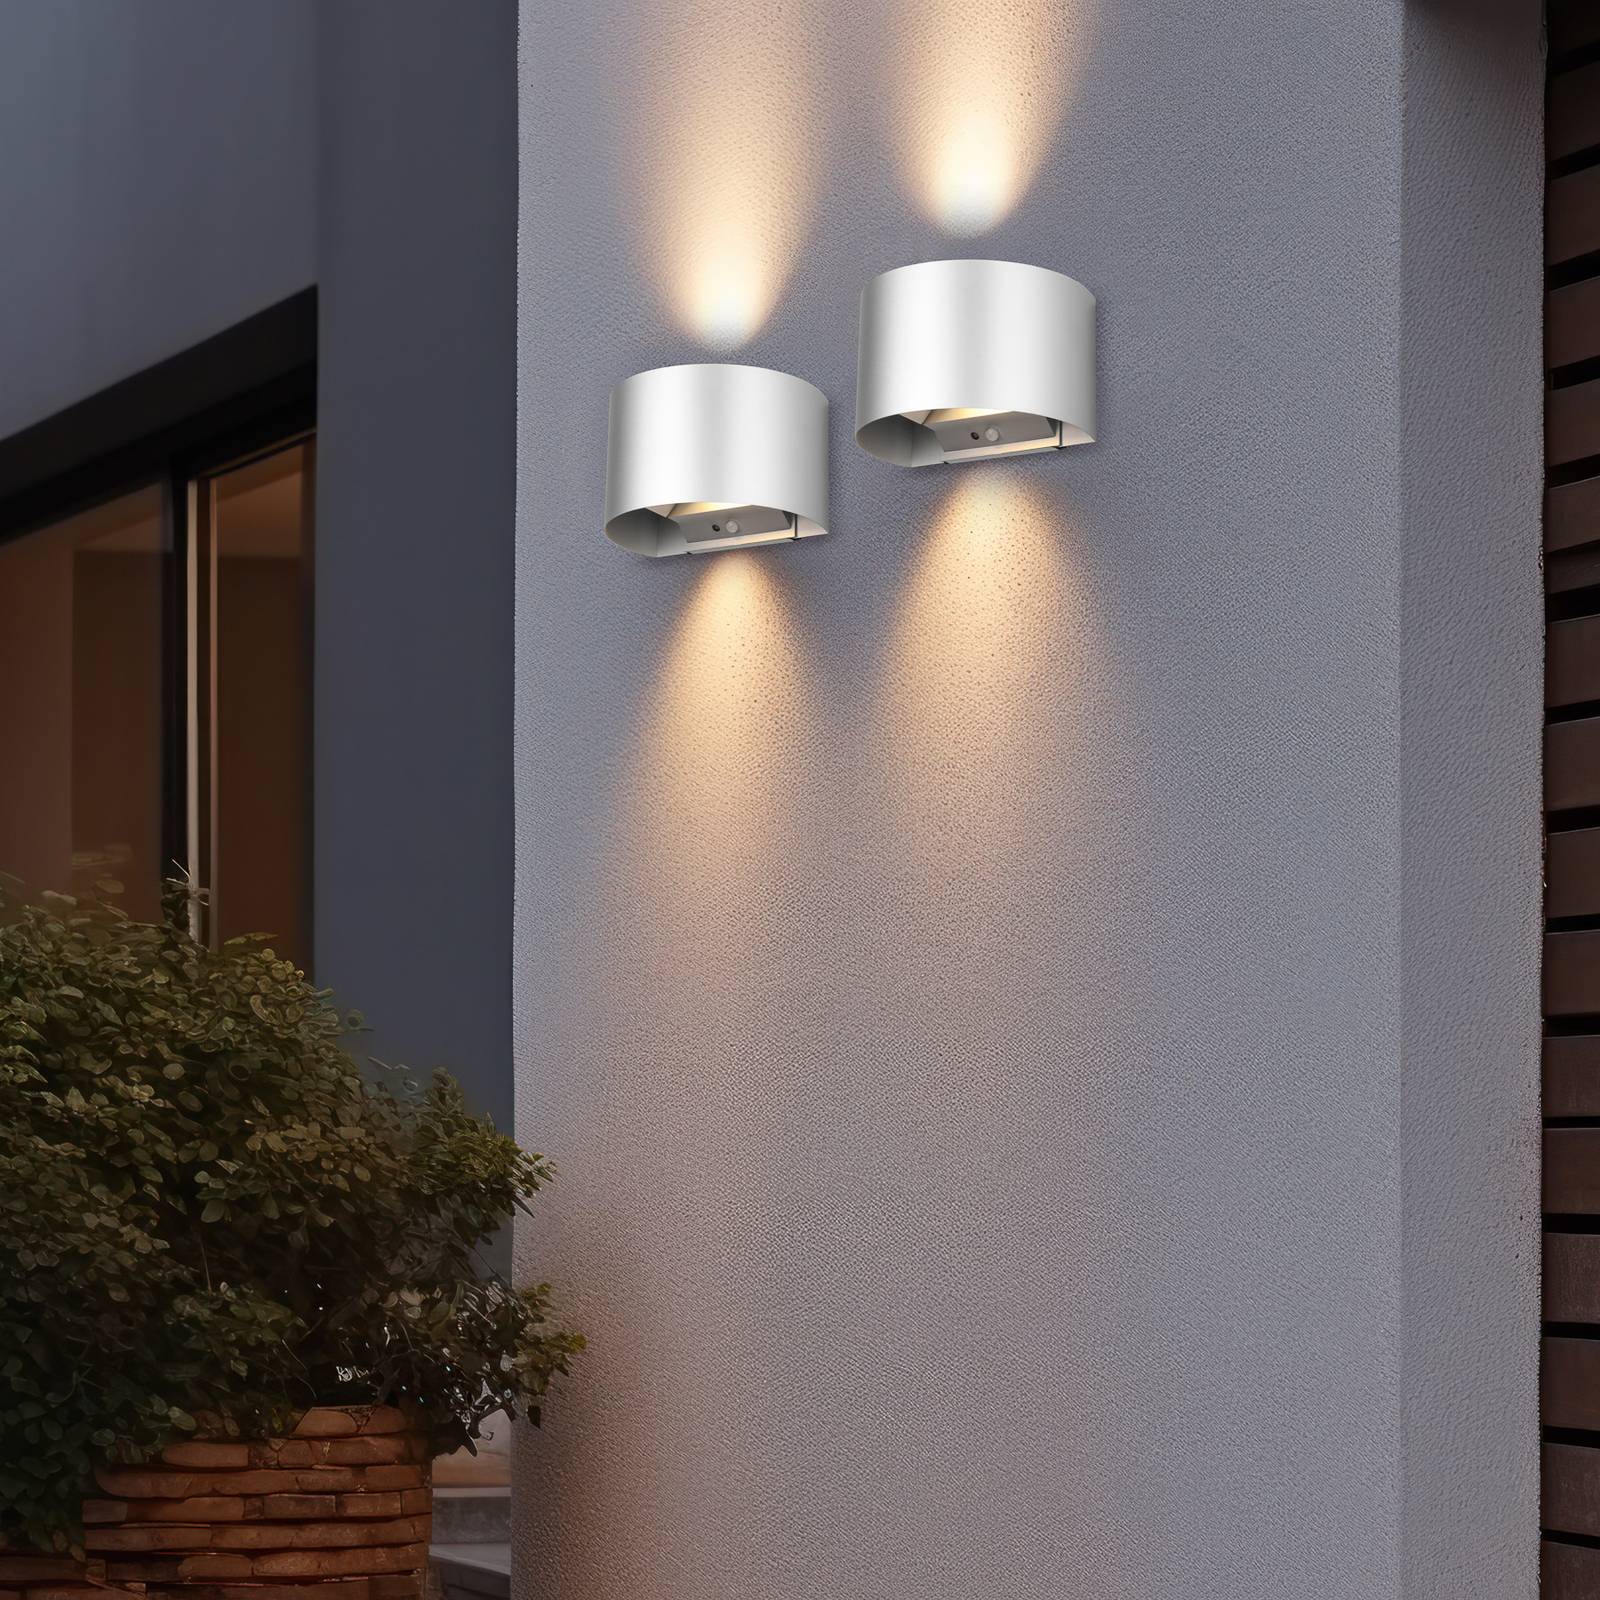 LED-es újratölthető kültéri fali lámpa Talent, titán színű, szélessége 16